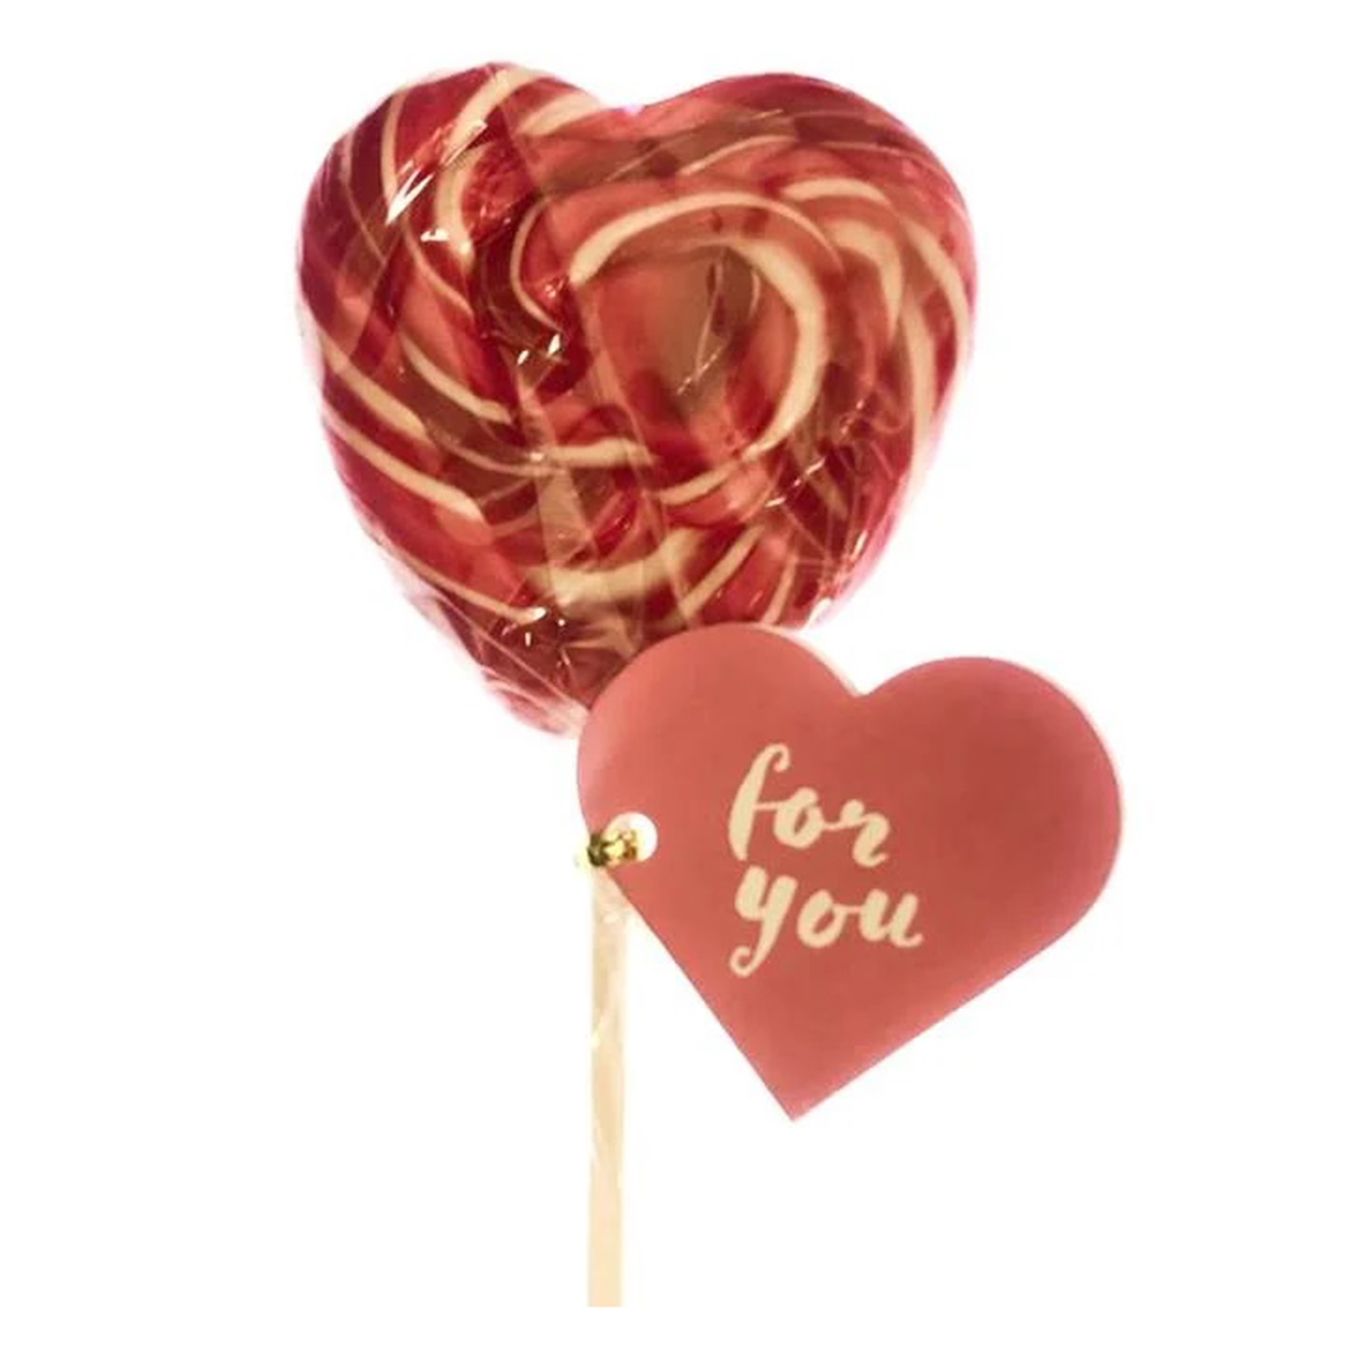 Lollipop Becky's Heart on a stick 50g